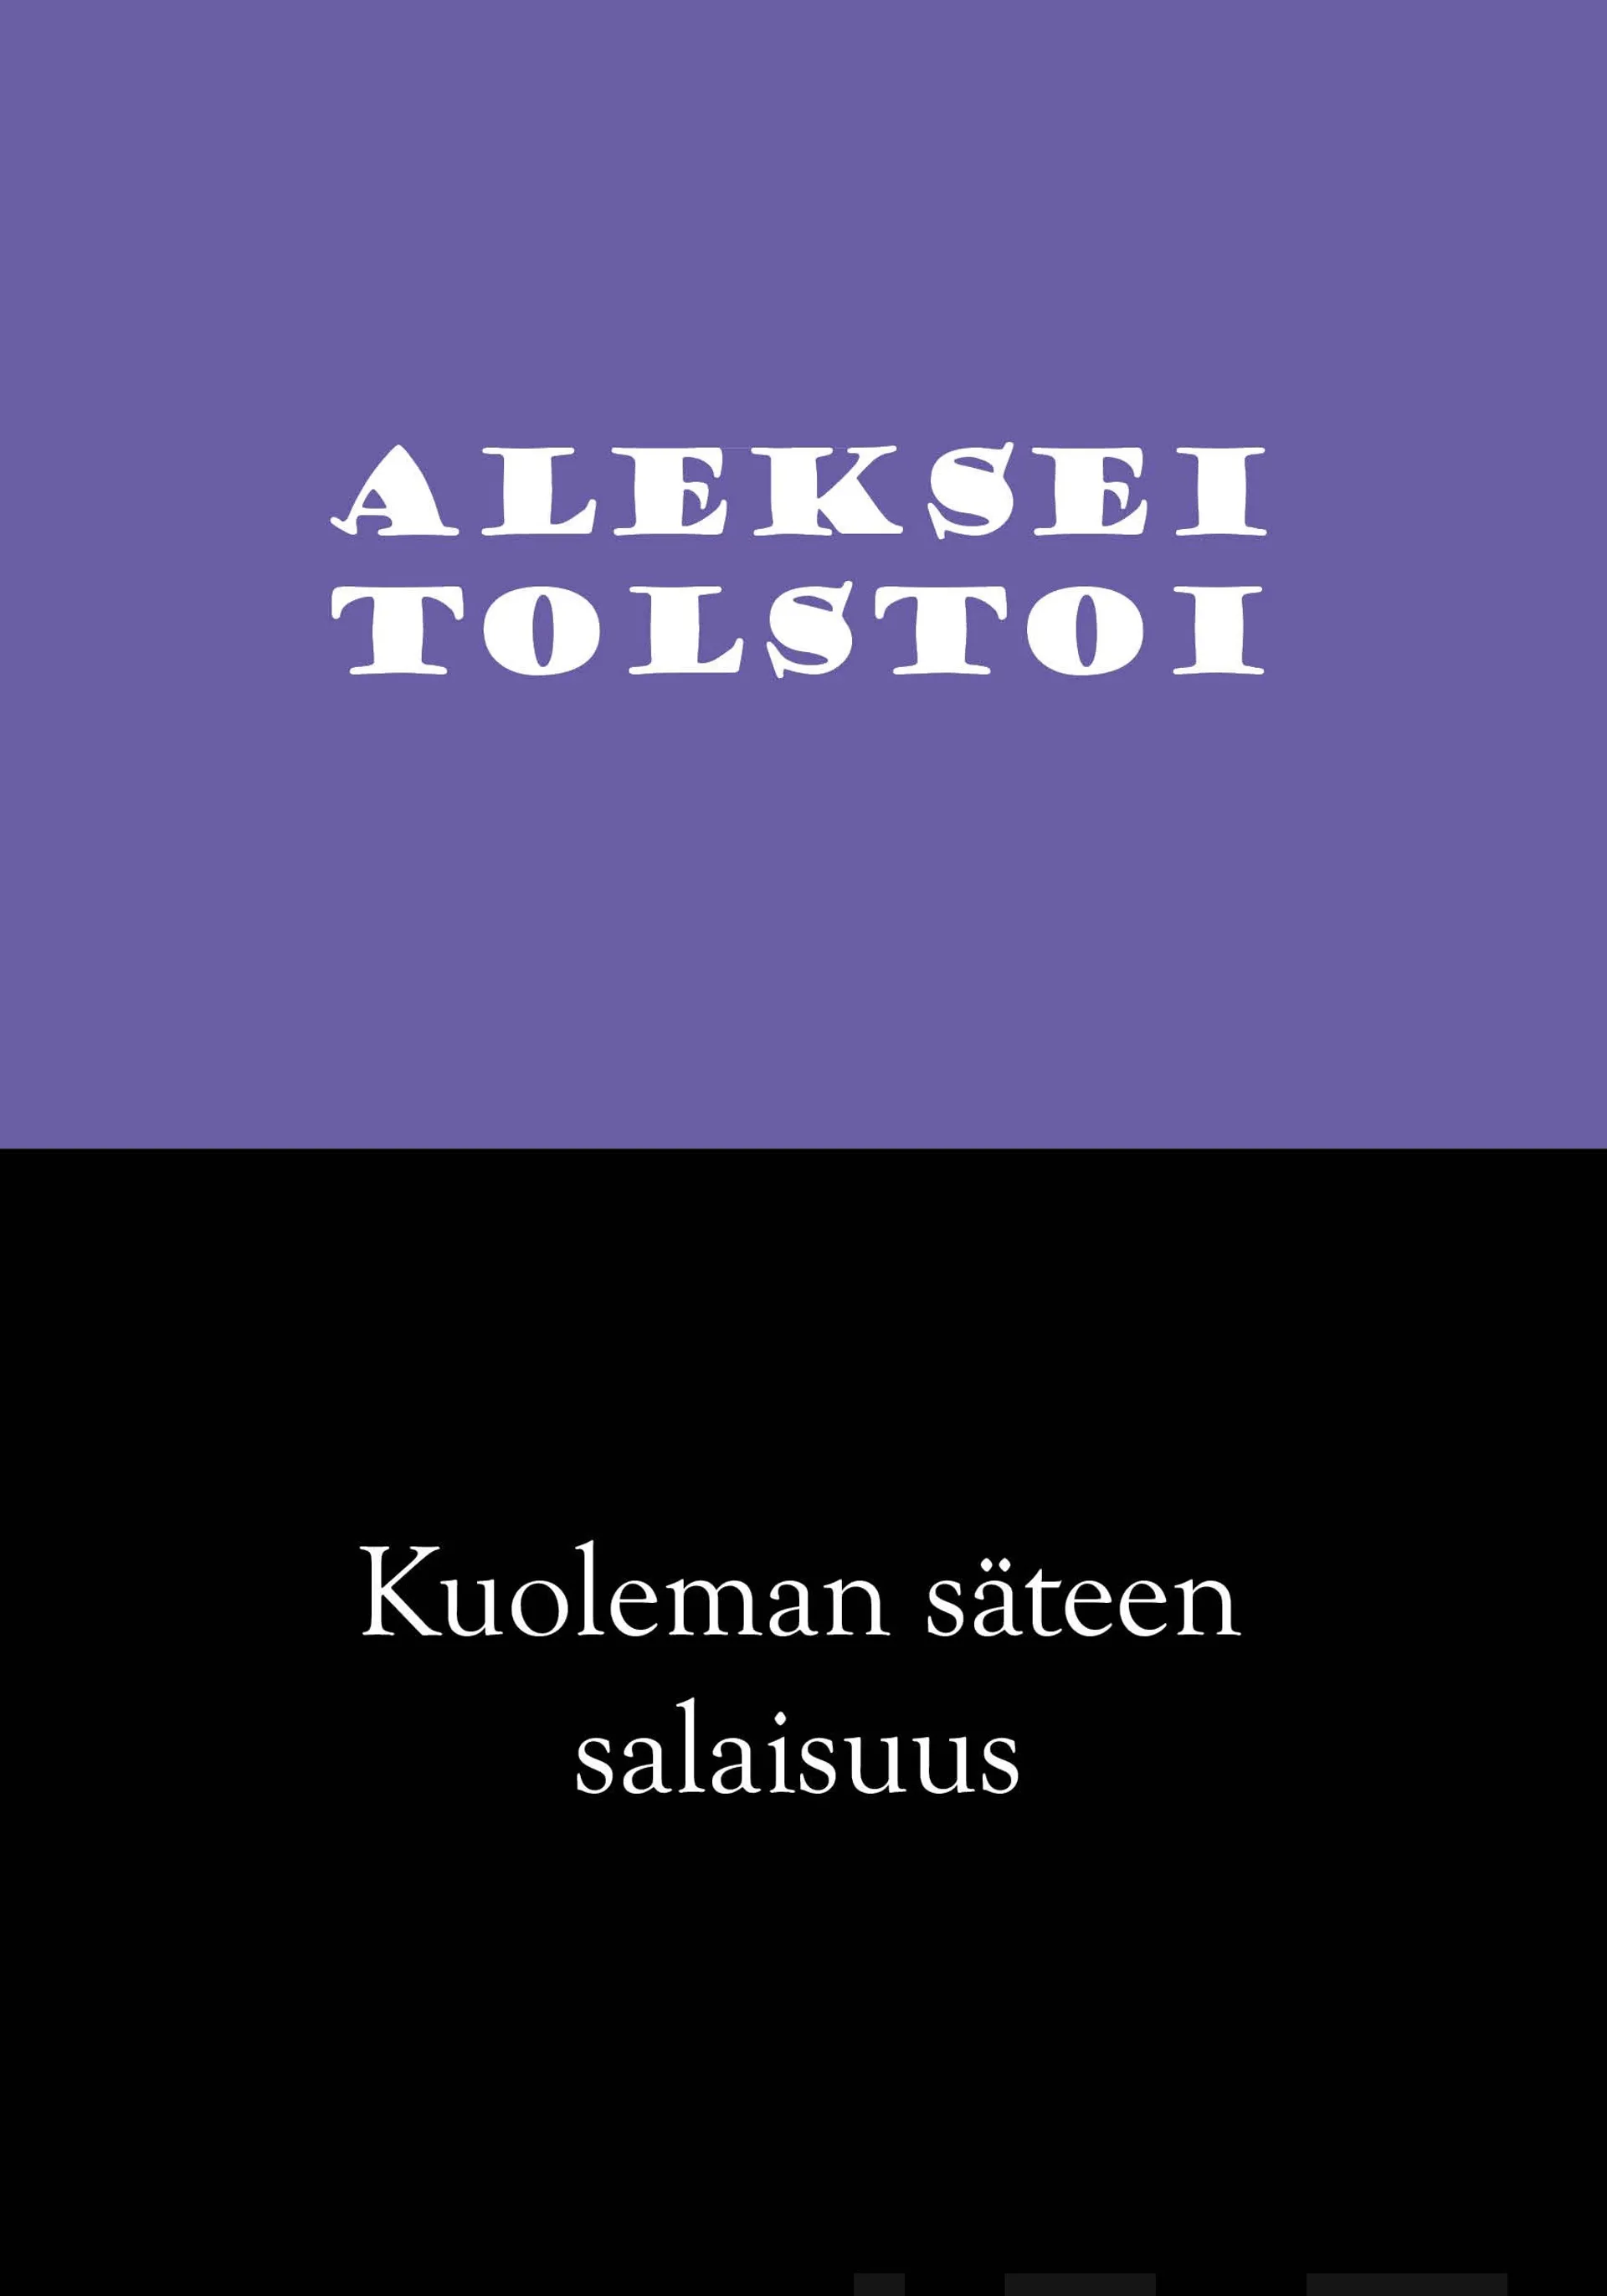 Tolstoi, Kuoleman säteen salaisuus